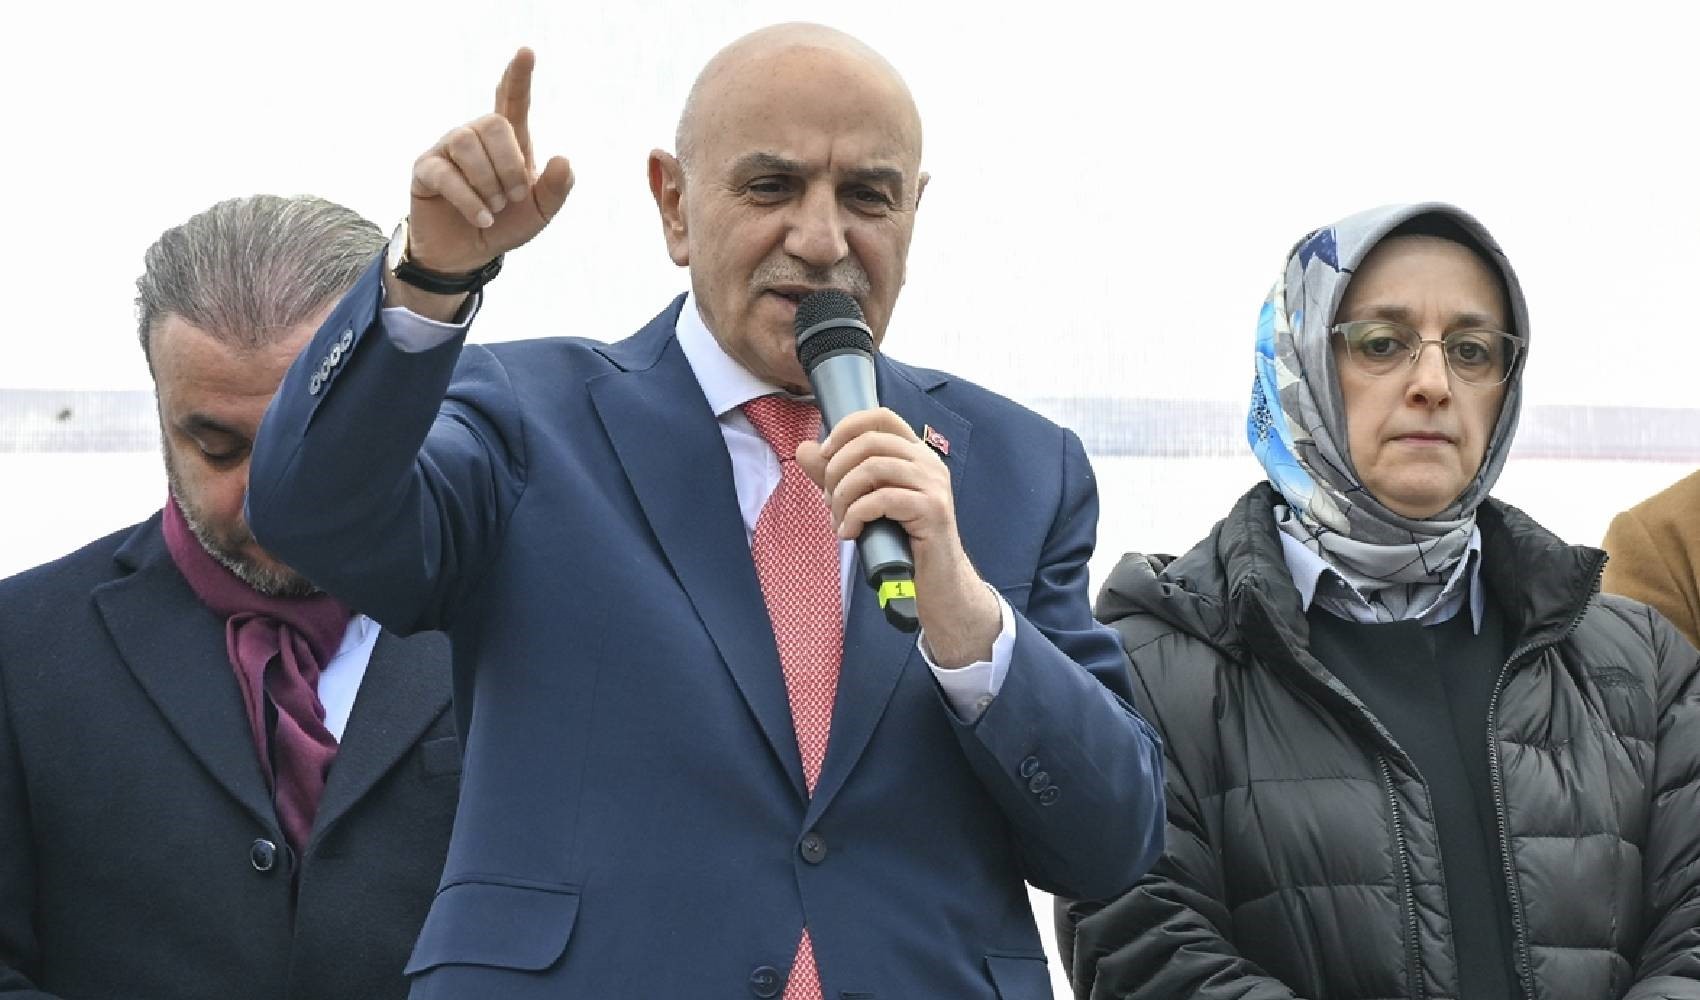 Cumhur İttifakı'nın ABB Başkan adayı Turgut Altınok, Mansur Yavaş'ı hedef aldı: 'Böyle aday olur mu?'